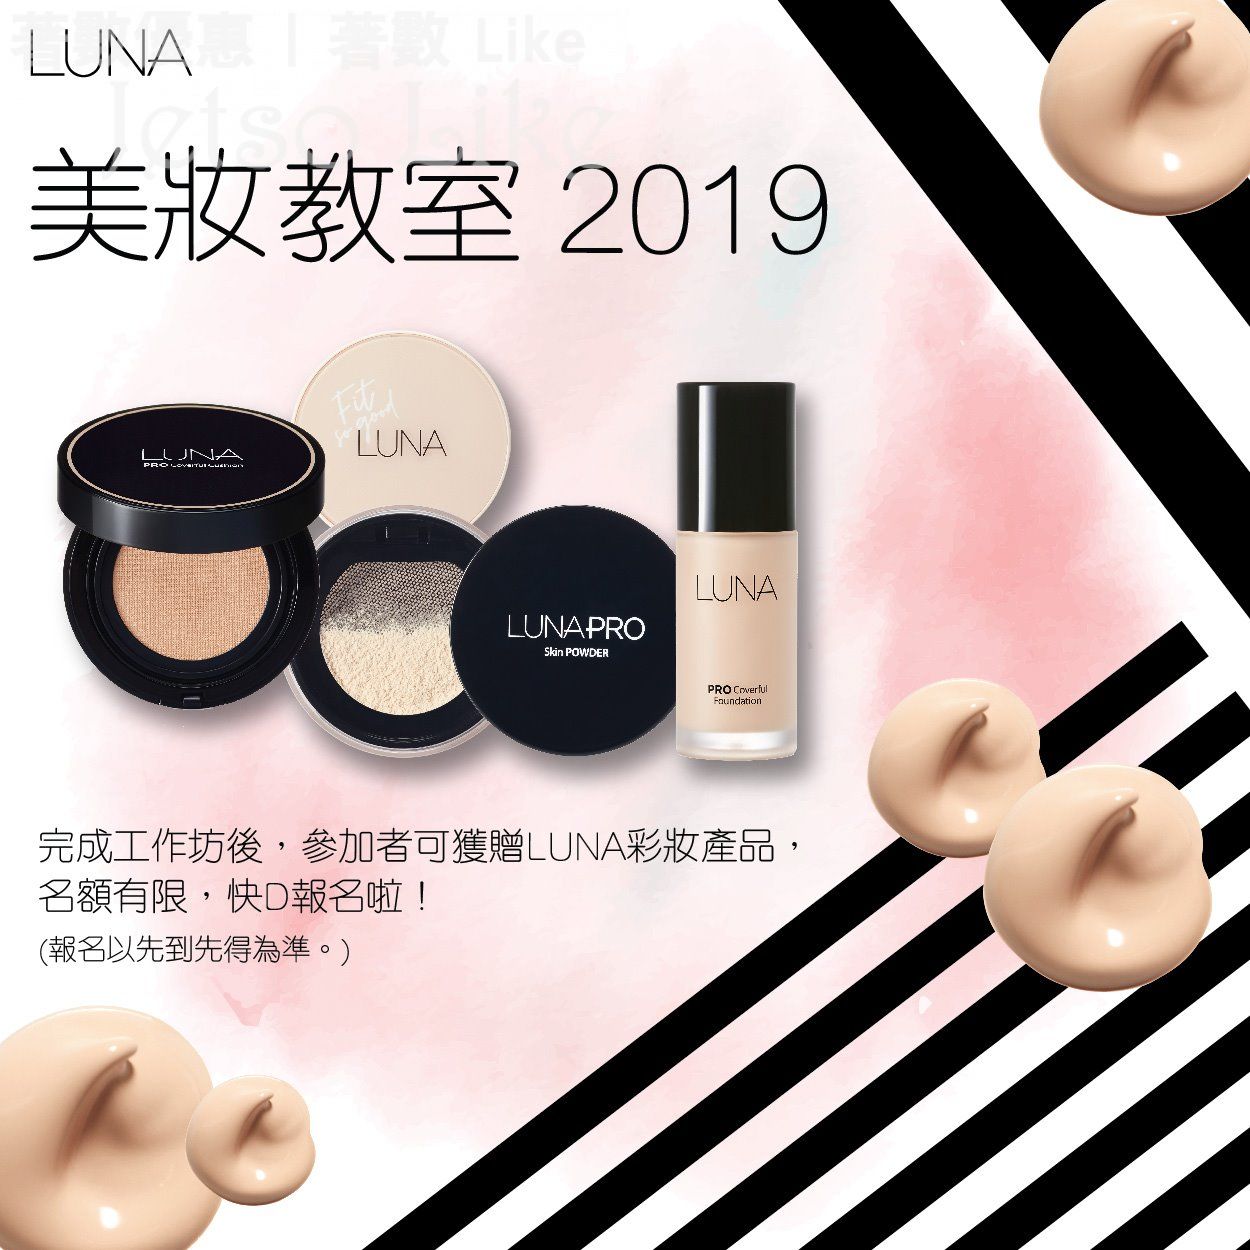 免費參加 LUNA美妝教室2019 送 LUNA彩妝產品